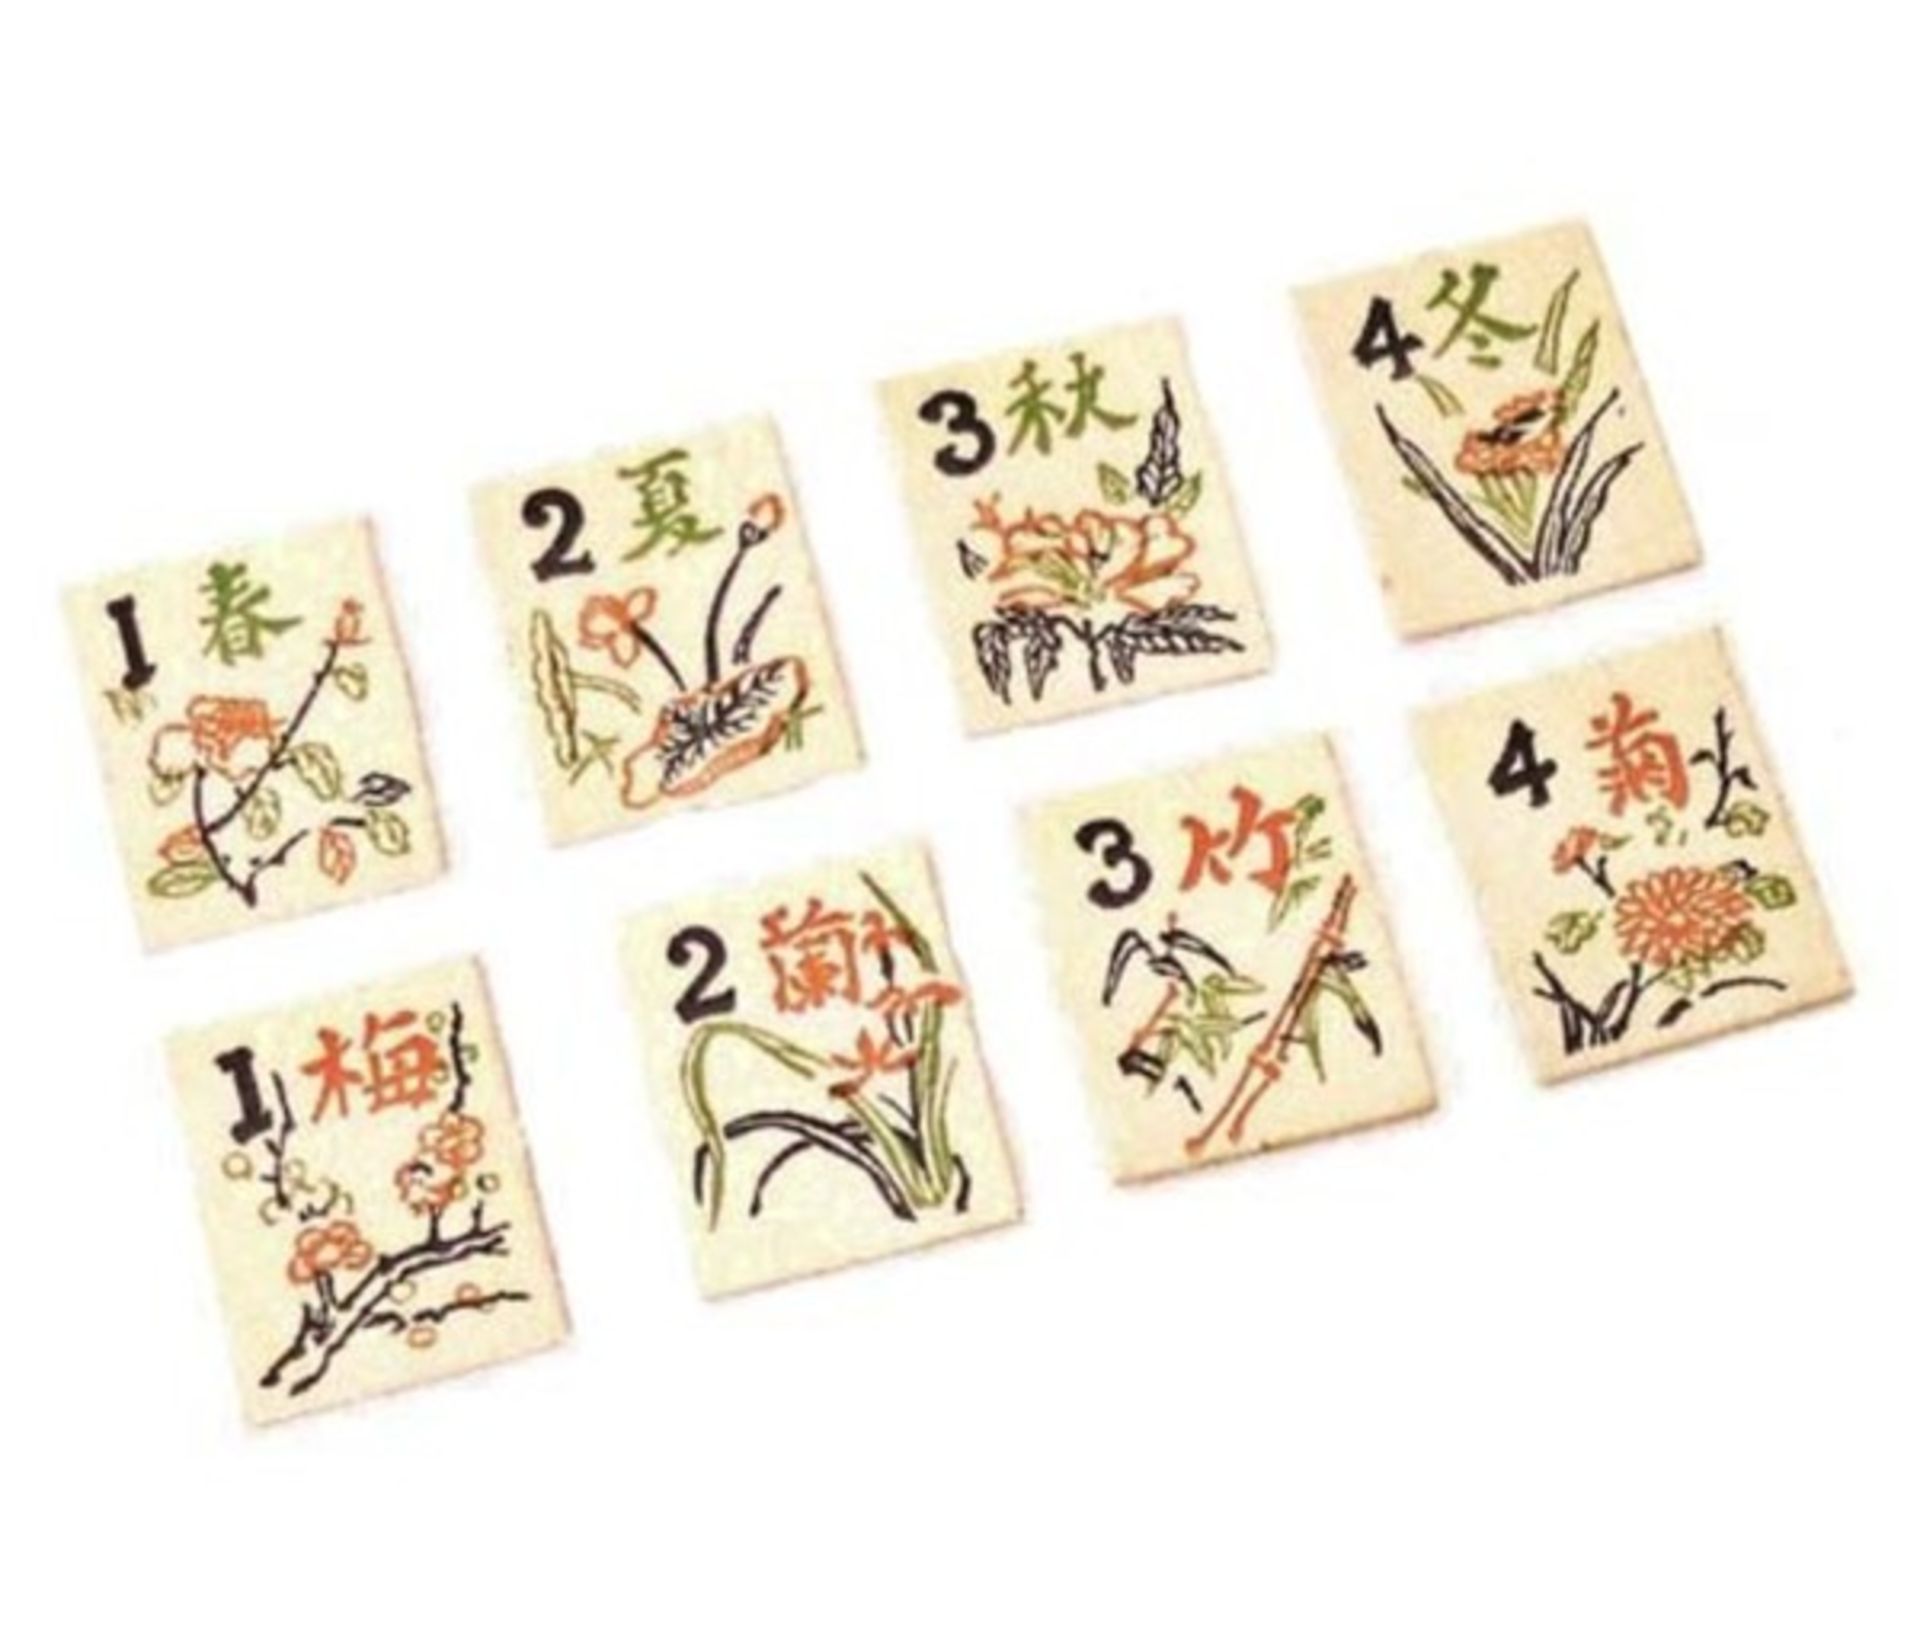 (Mahjong) Mahjong, Mar-Juck, The Regensteiner Company Chicagom, 1923 - Bild 9 aus 12